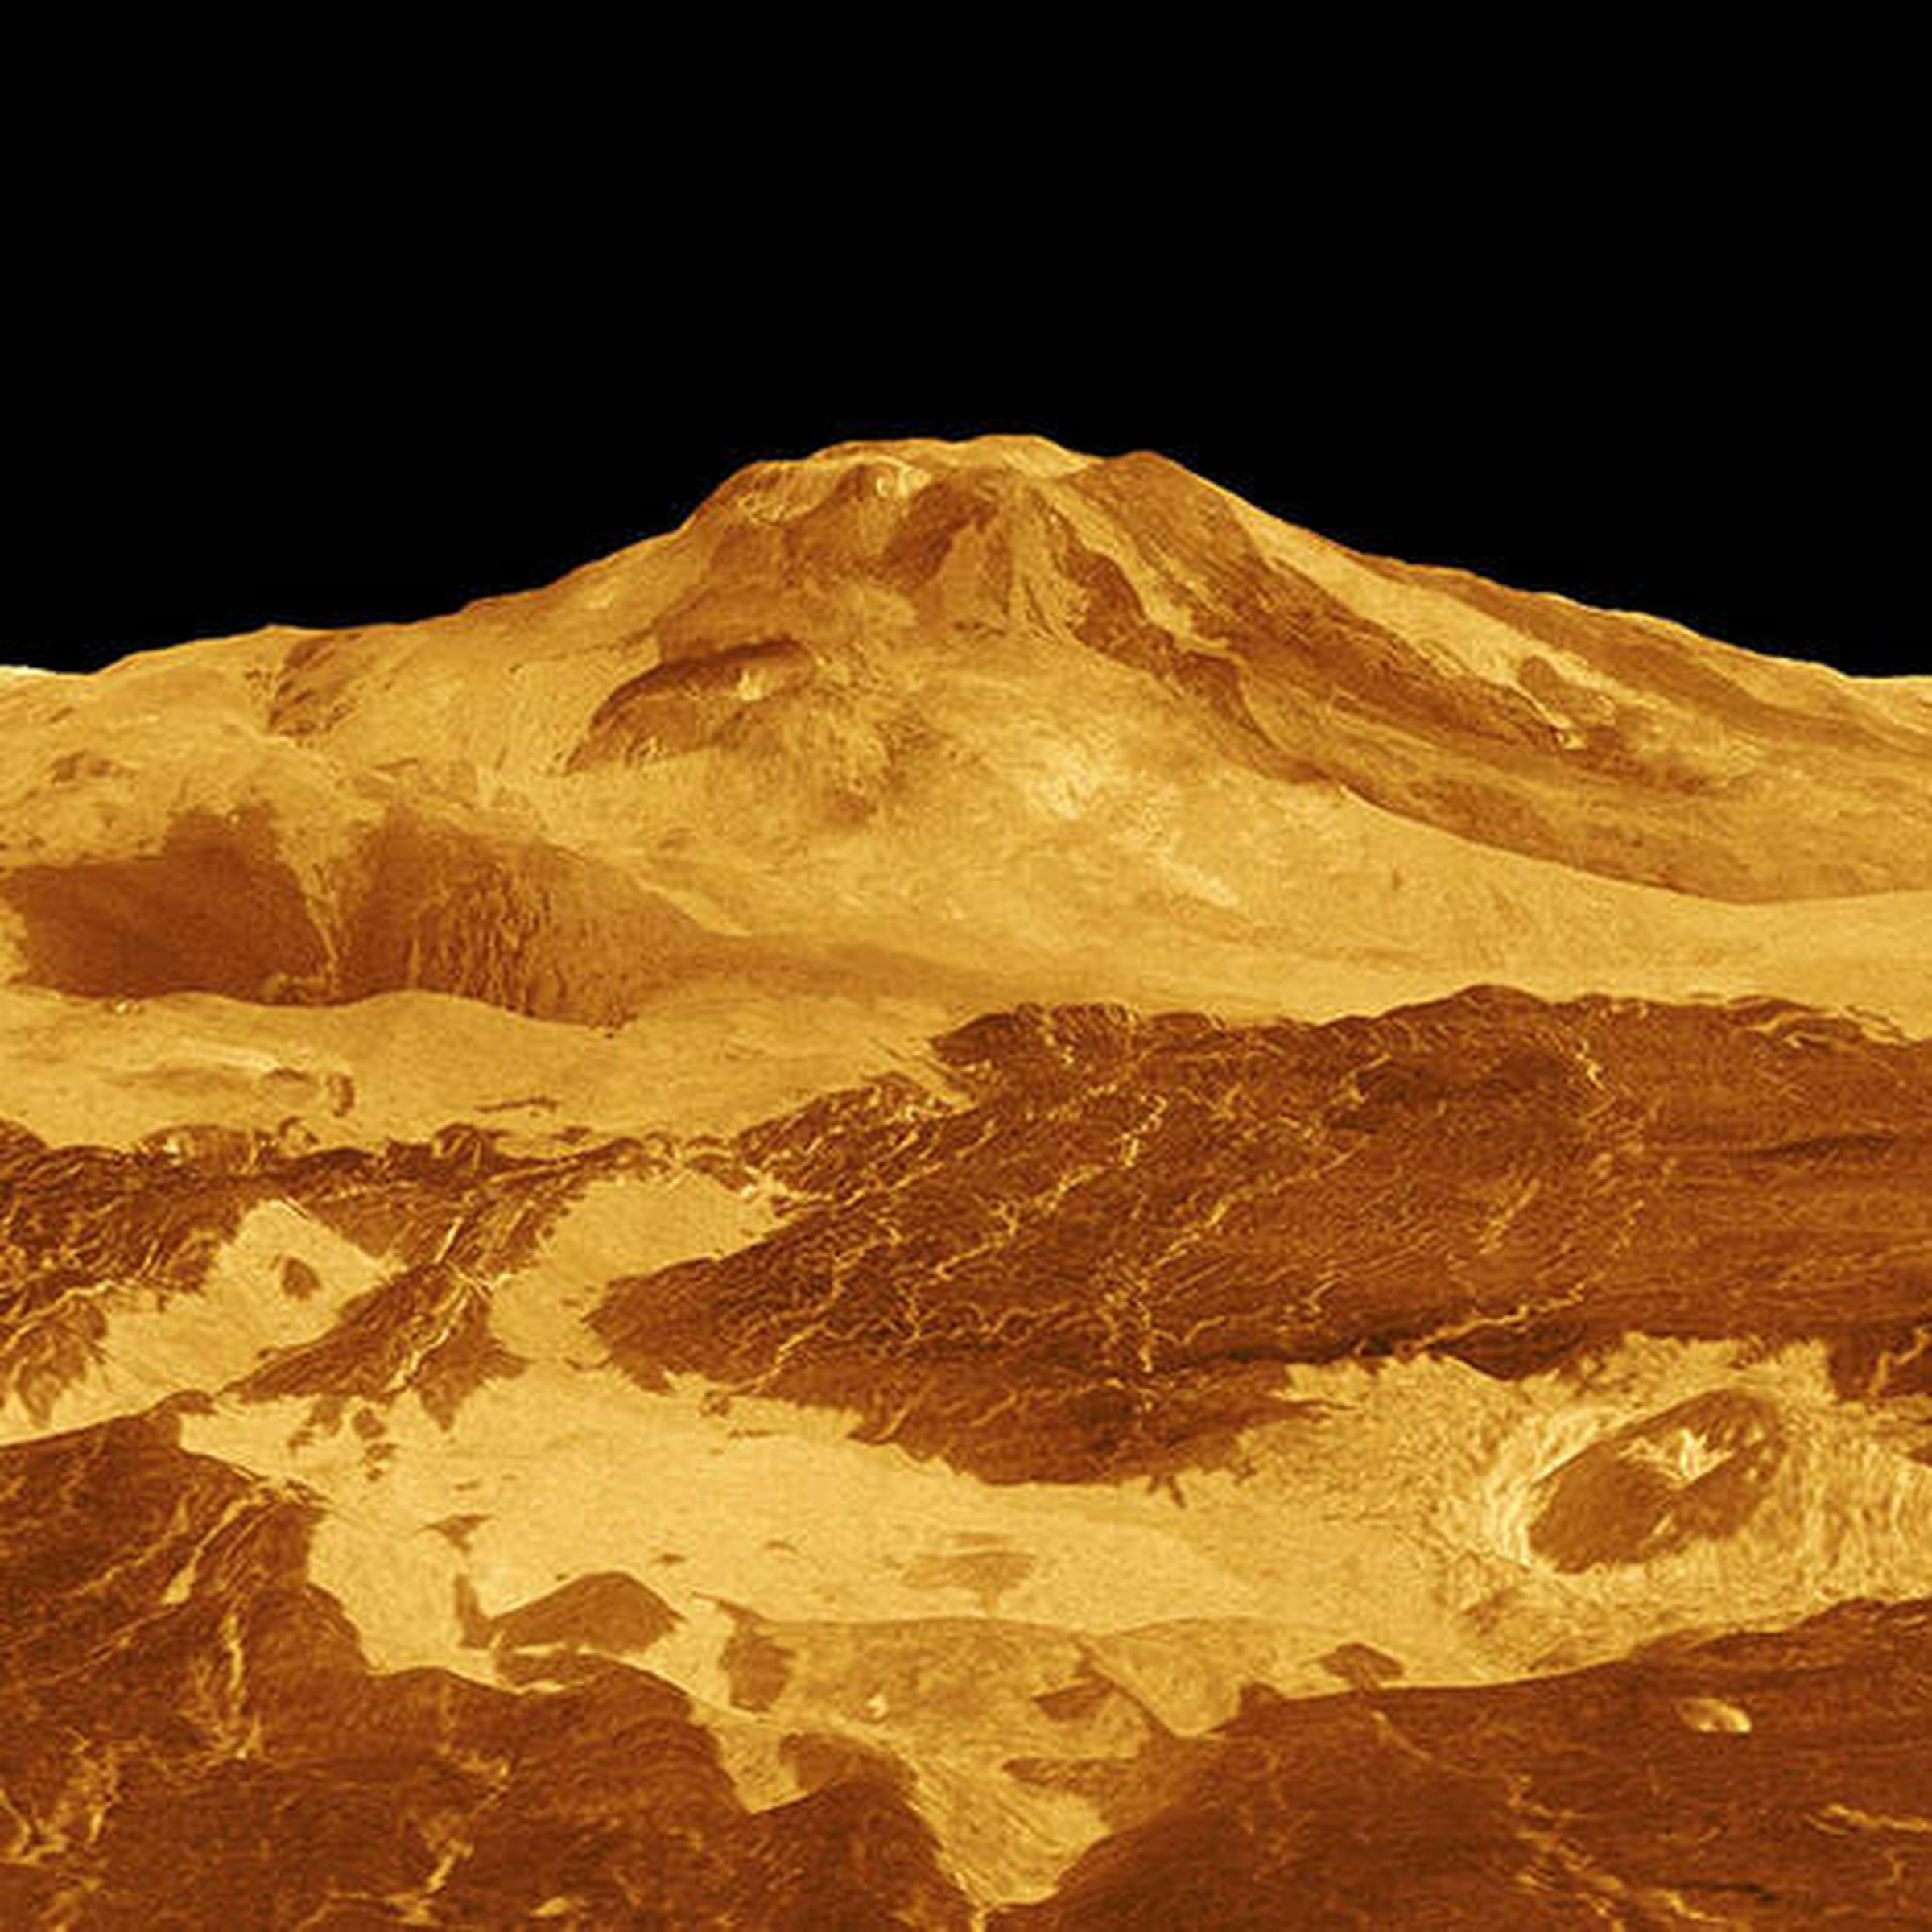 3D rendering of a volcano on Venus